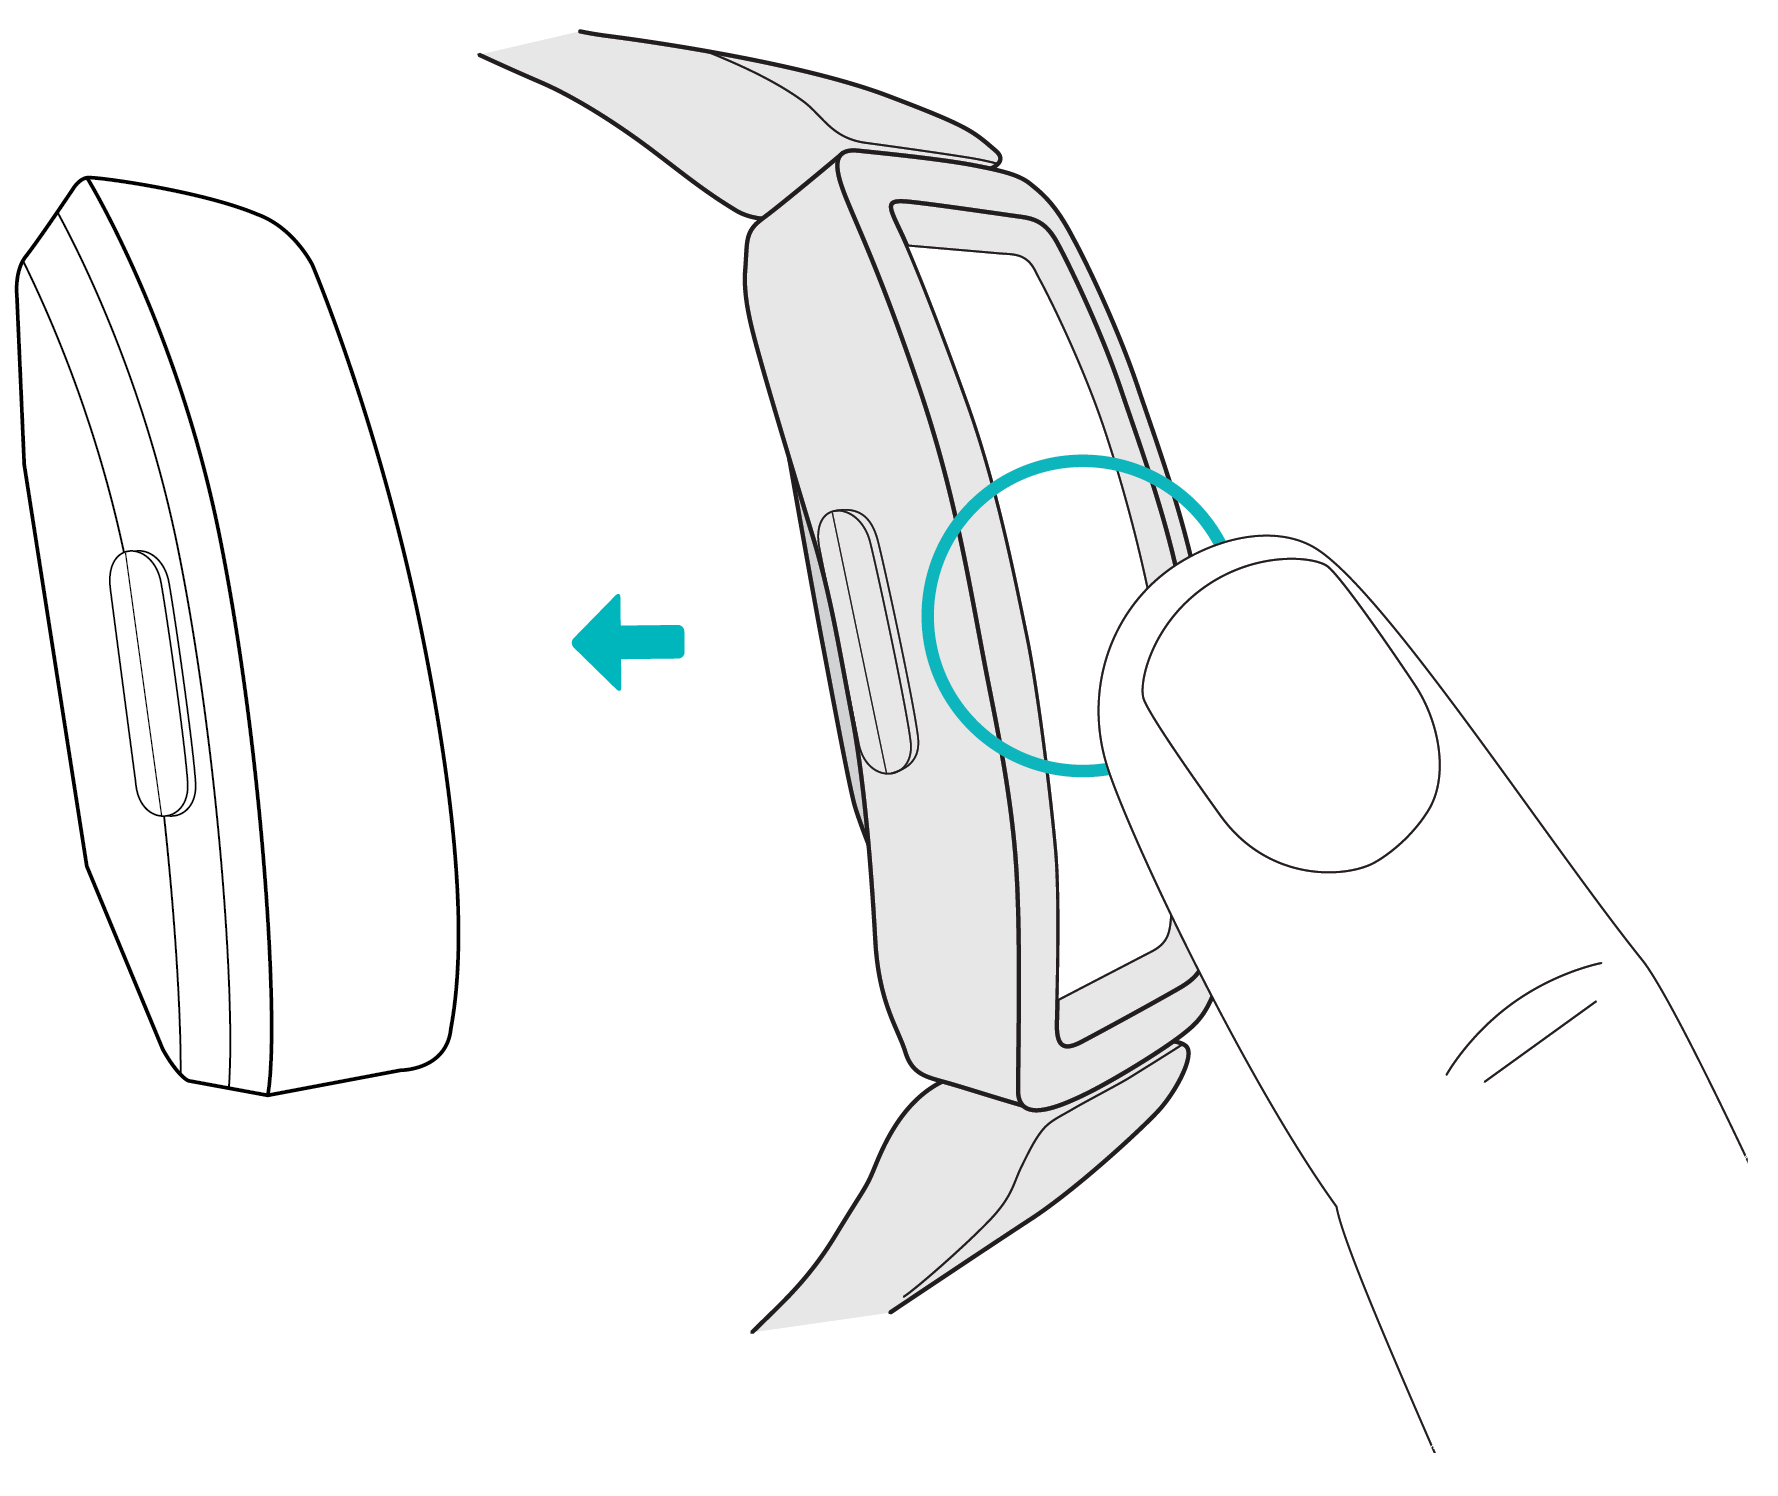 Coach électronique détaché avec une flèche indiquant comment le retirer du bracelet